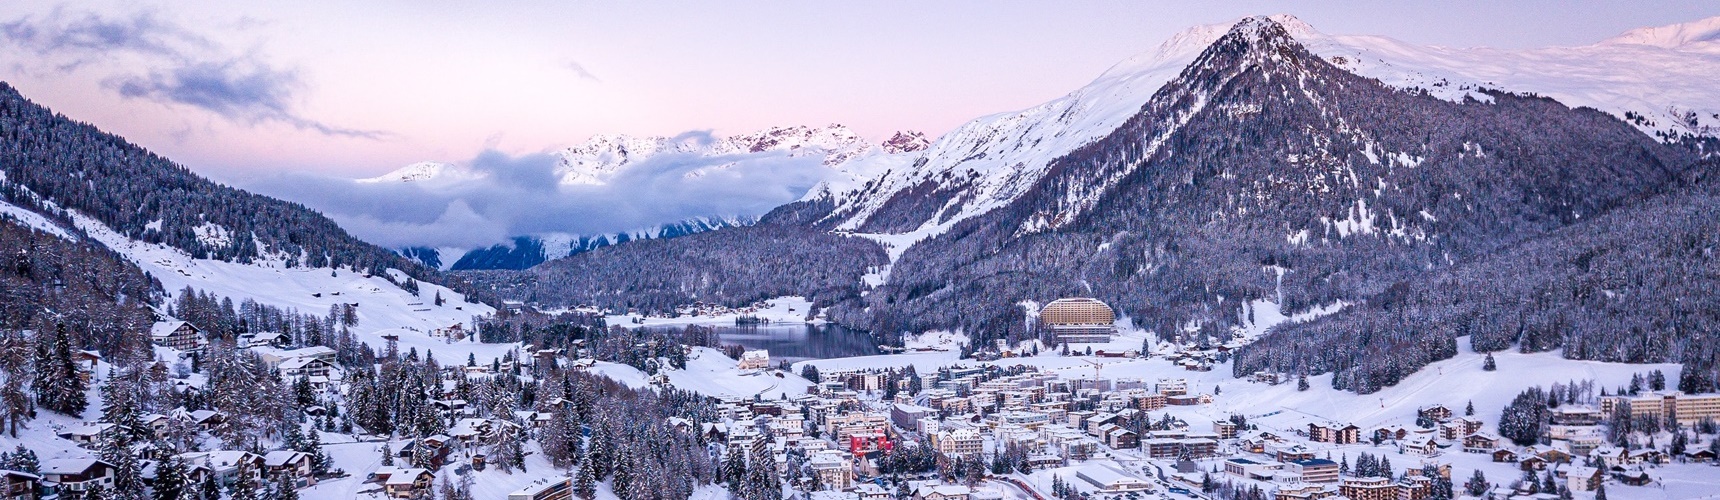 Davos im Winter Abend